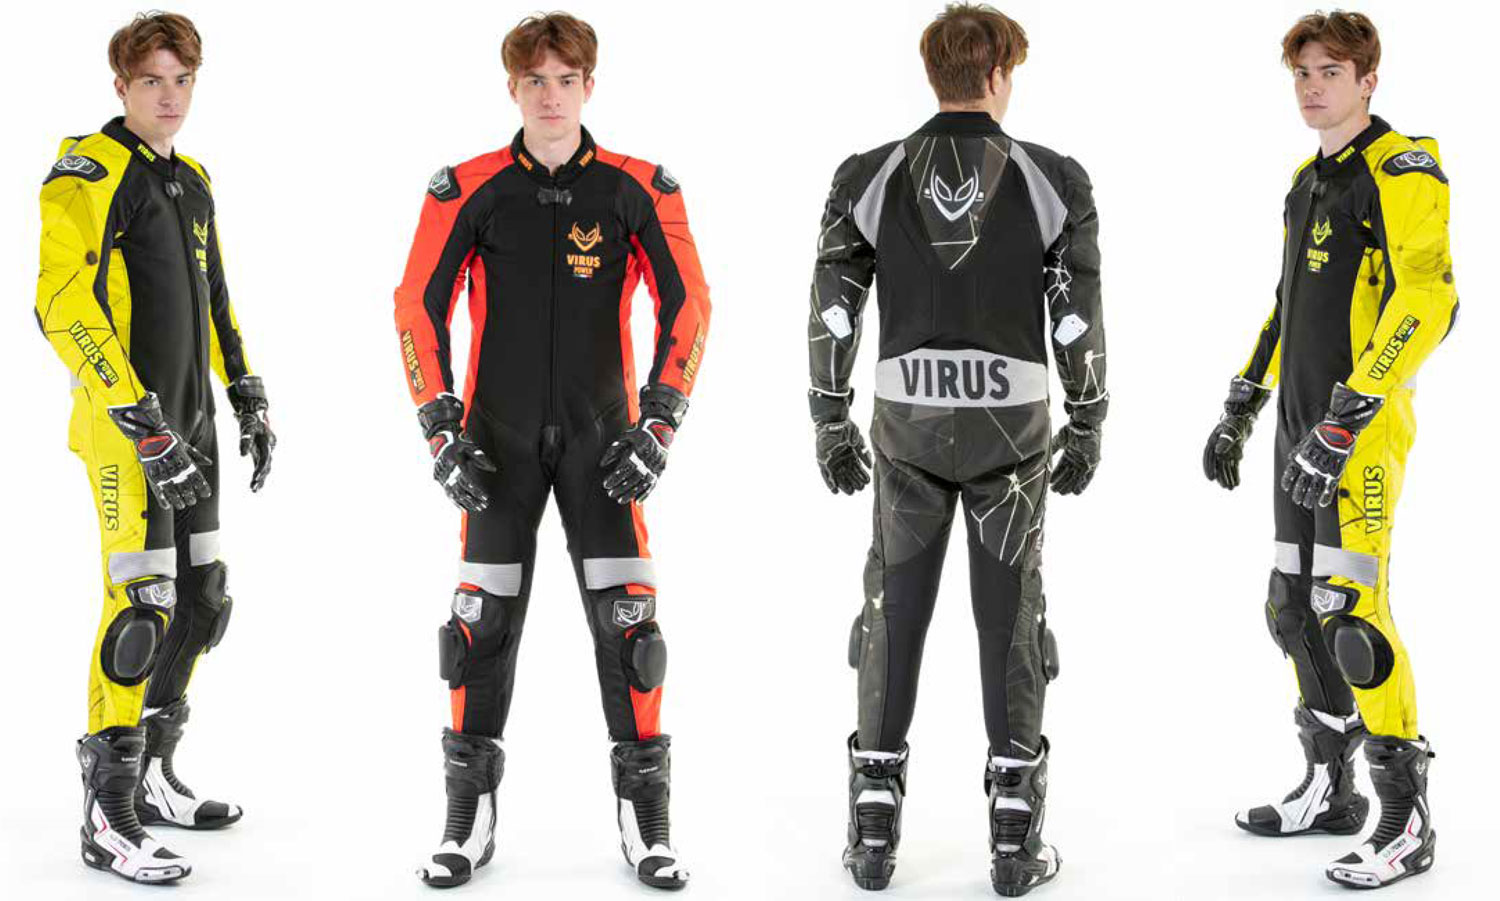 Virus Power è il brand che in due decadi di ricerche su tessuti tecnici lancia una nuova collezione di tute da moto e abbigliamento sportivo.